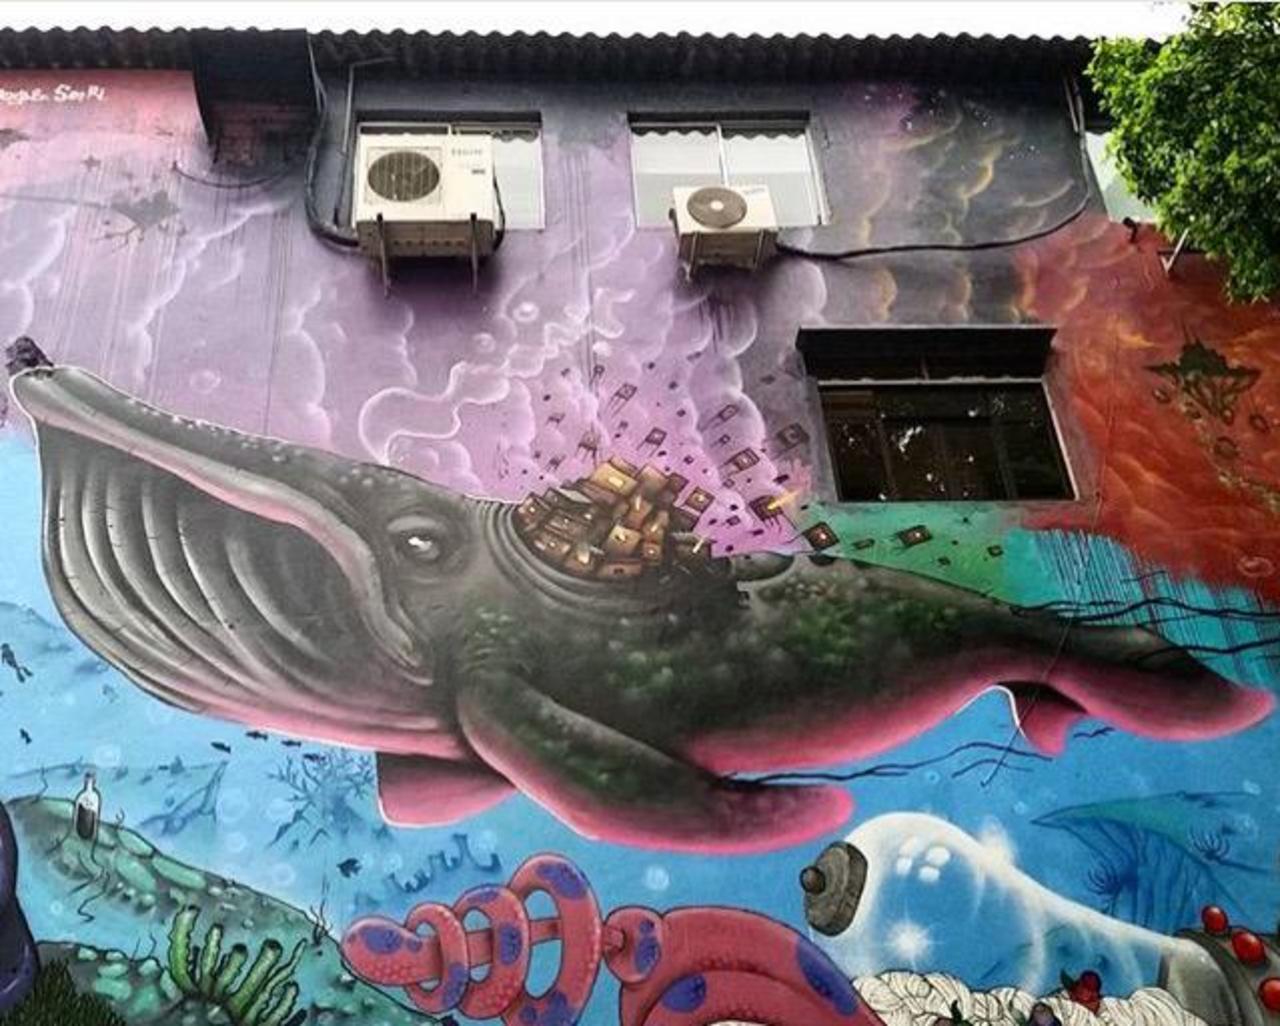 RT ArchaicManor "Street Art by joks_johnes Pinheiros, São Paulo 

#art #mural #graffiti #streetart http://t.co/nWB1dXW3S3 yo"